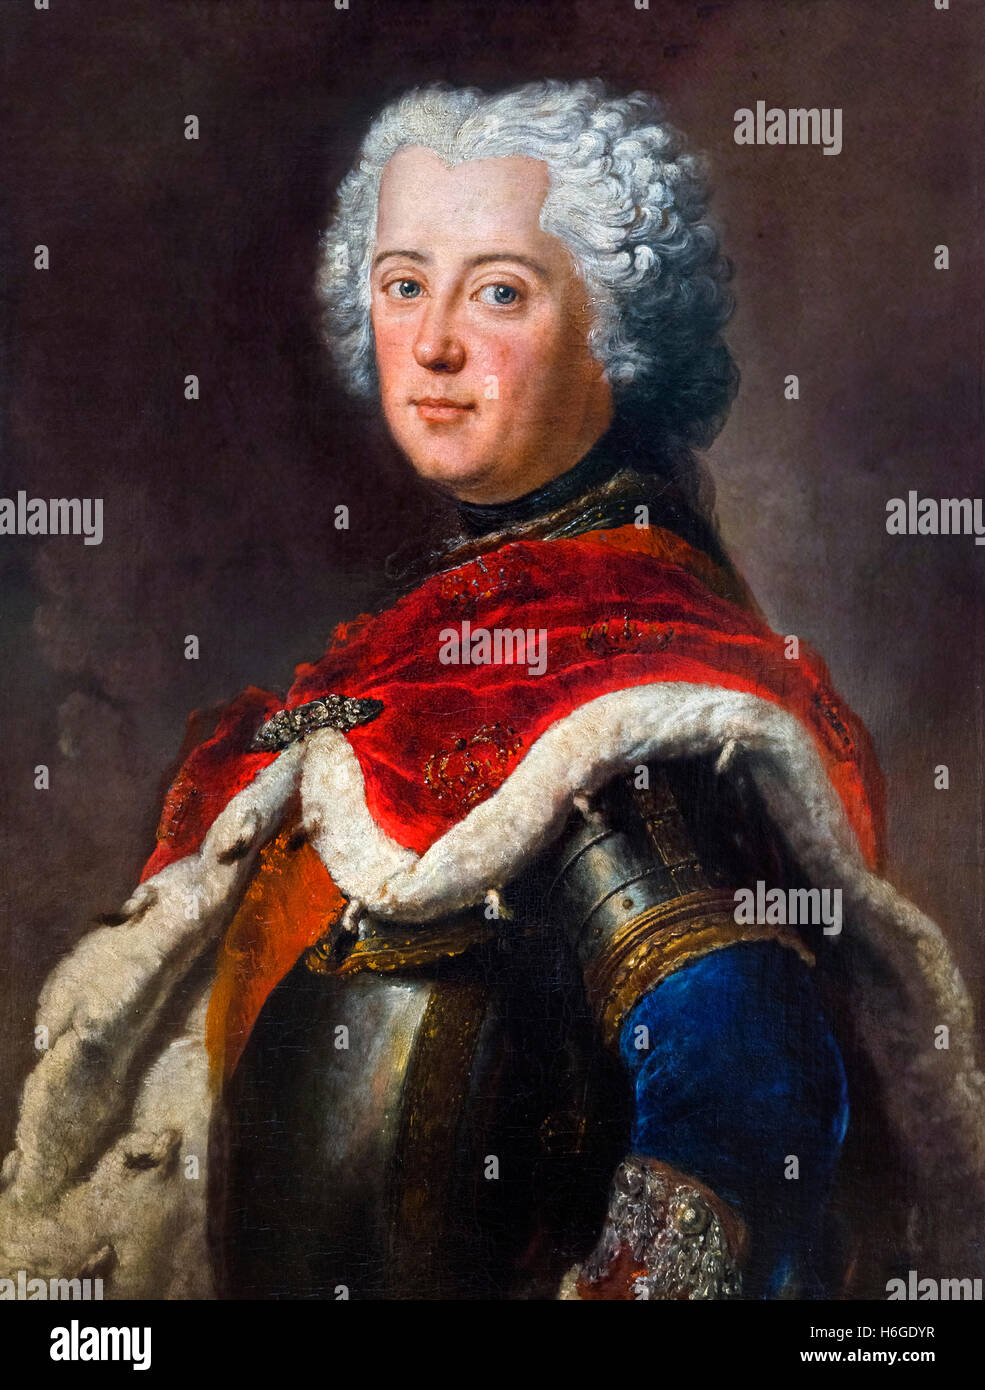 Frédéric le Grand (Friedrich der Große:1712-1786) en tant que prince héritier. Portrait par Antoine Pesne, huile sur toile, c.1739. Frédéric II a été roi de Prusse à partir de 1740 jusqu'à sa mort en 1786 Banque D'Images